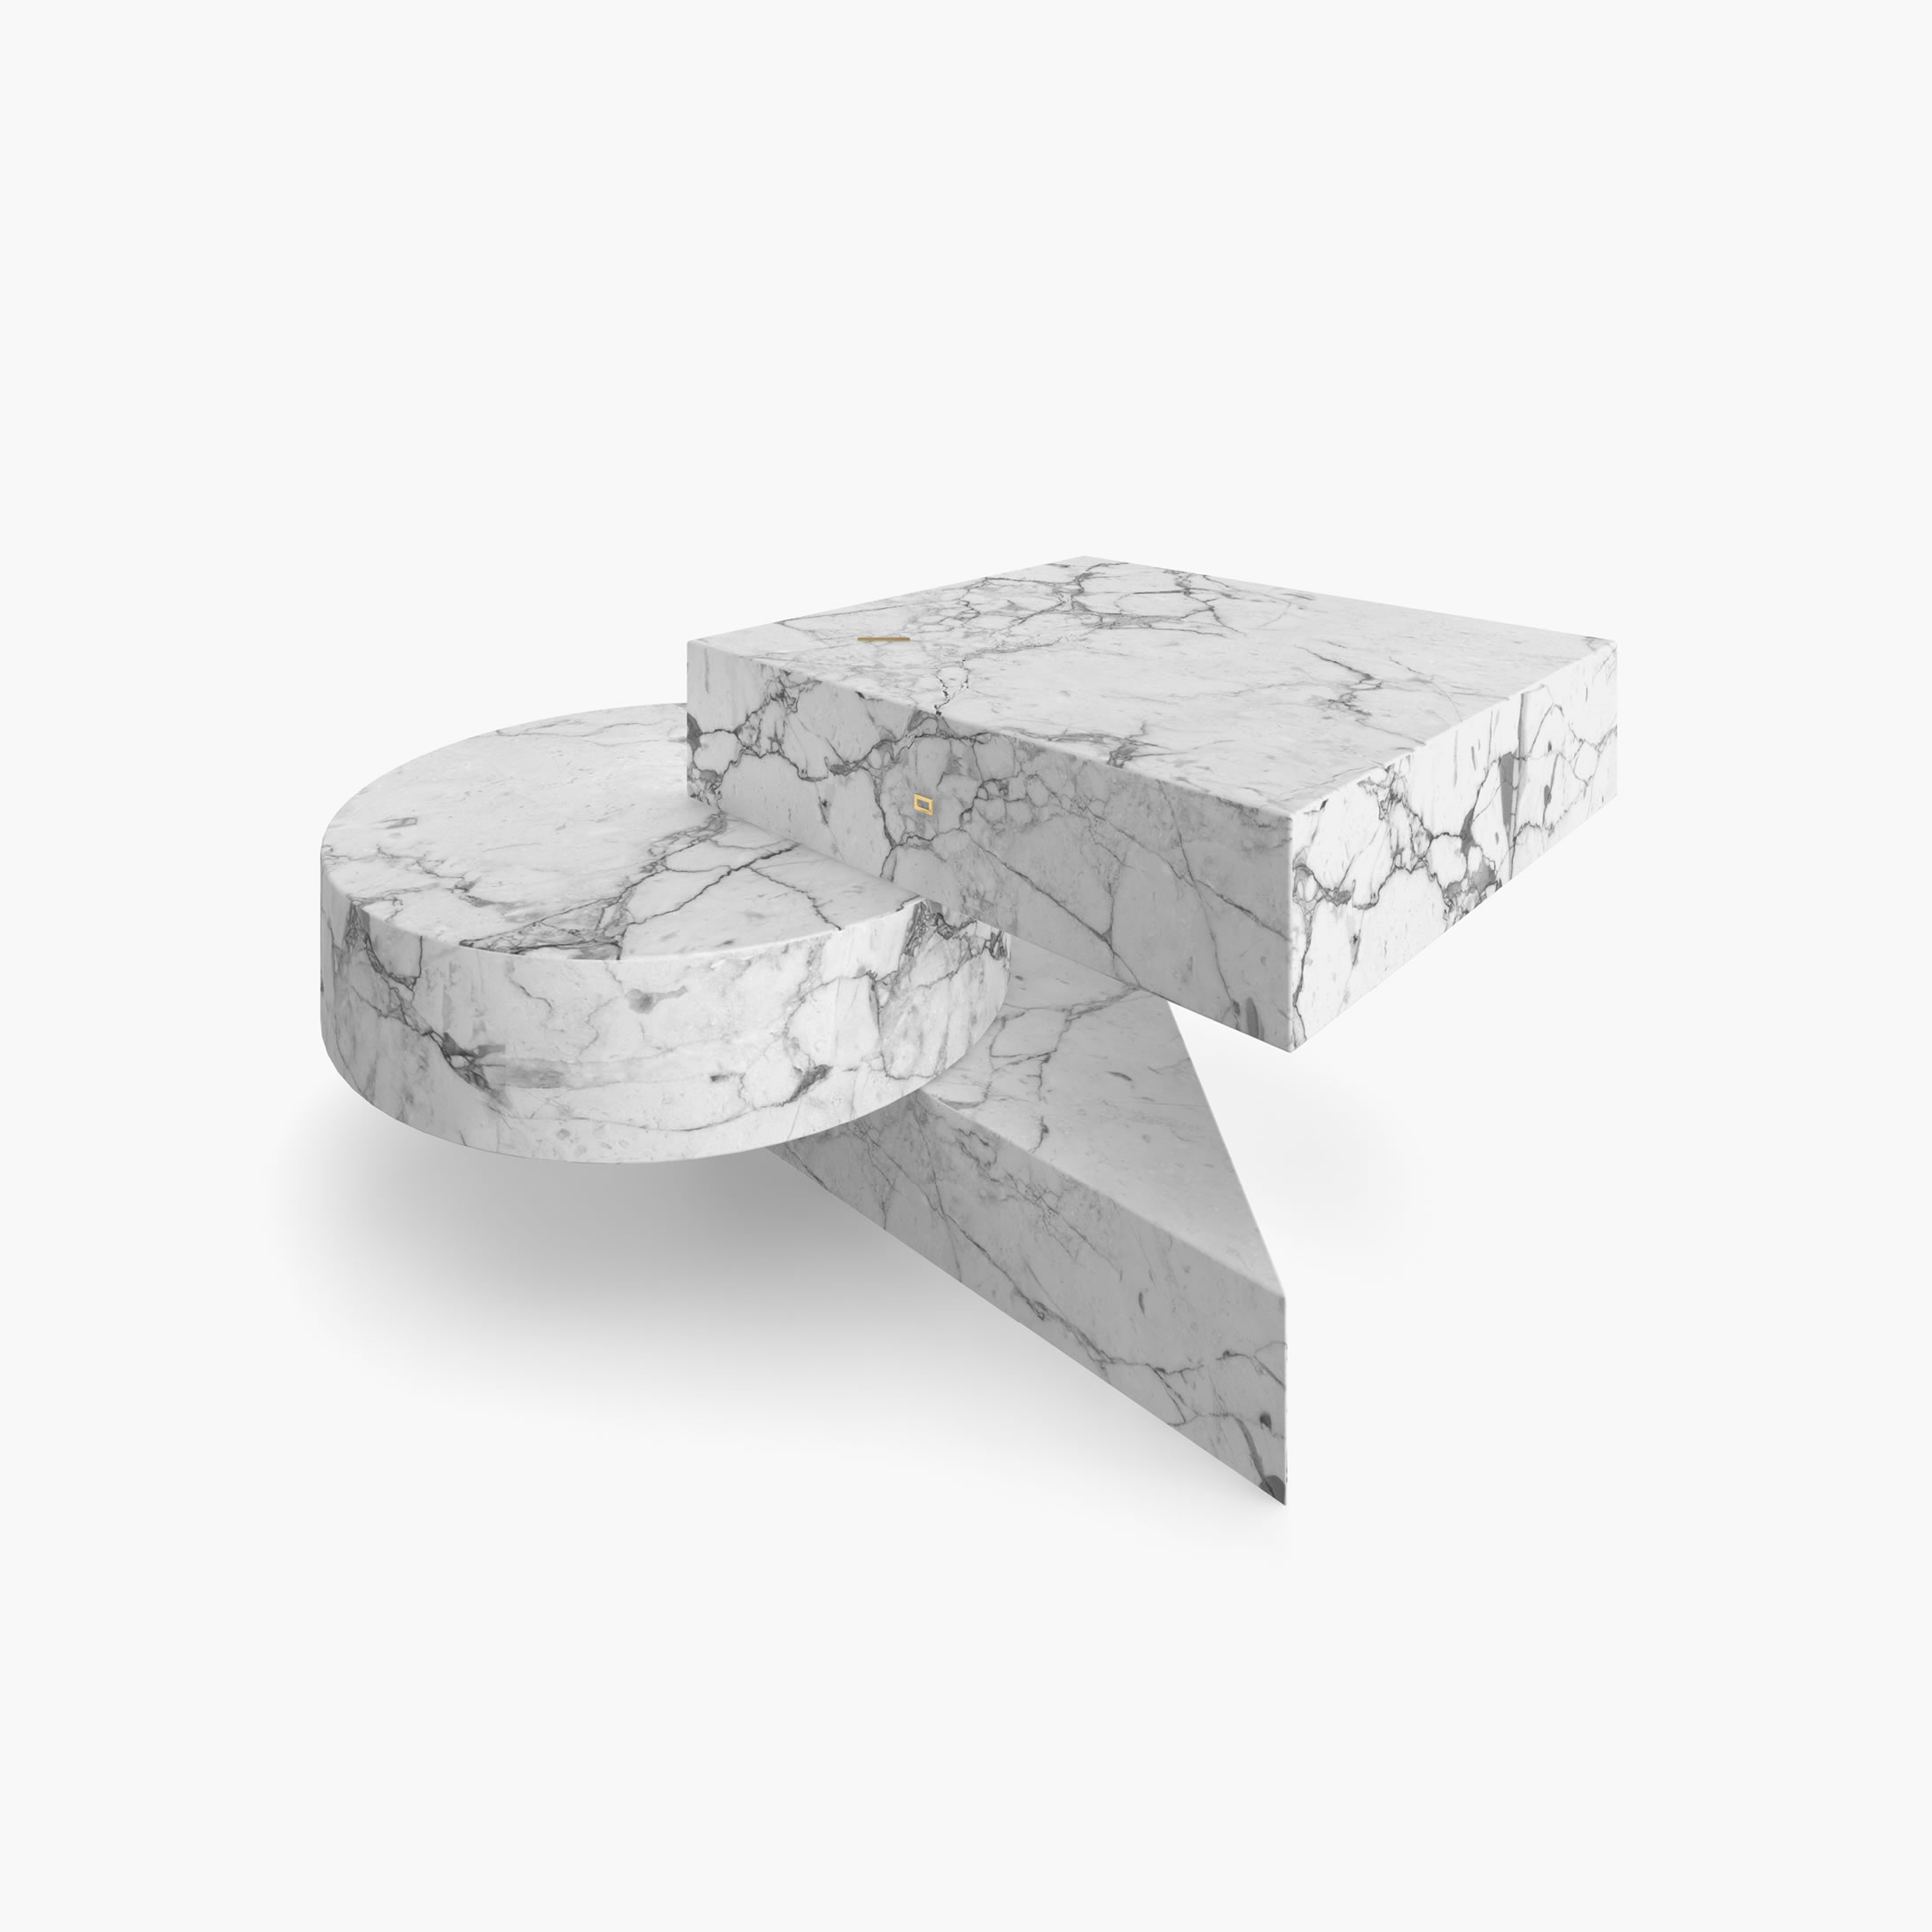 Beistelltisch Zylinder Quader Prisma Weiss Arabescato Marmor exklusiv Wohnzimmer Design Beistelltische FS 130 2 FELIX SCHWAKE